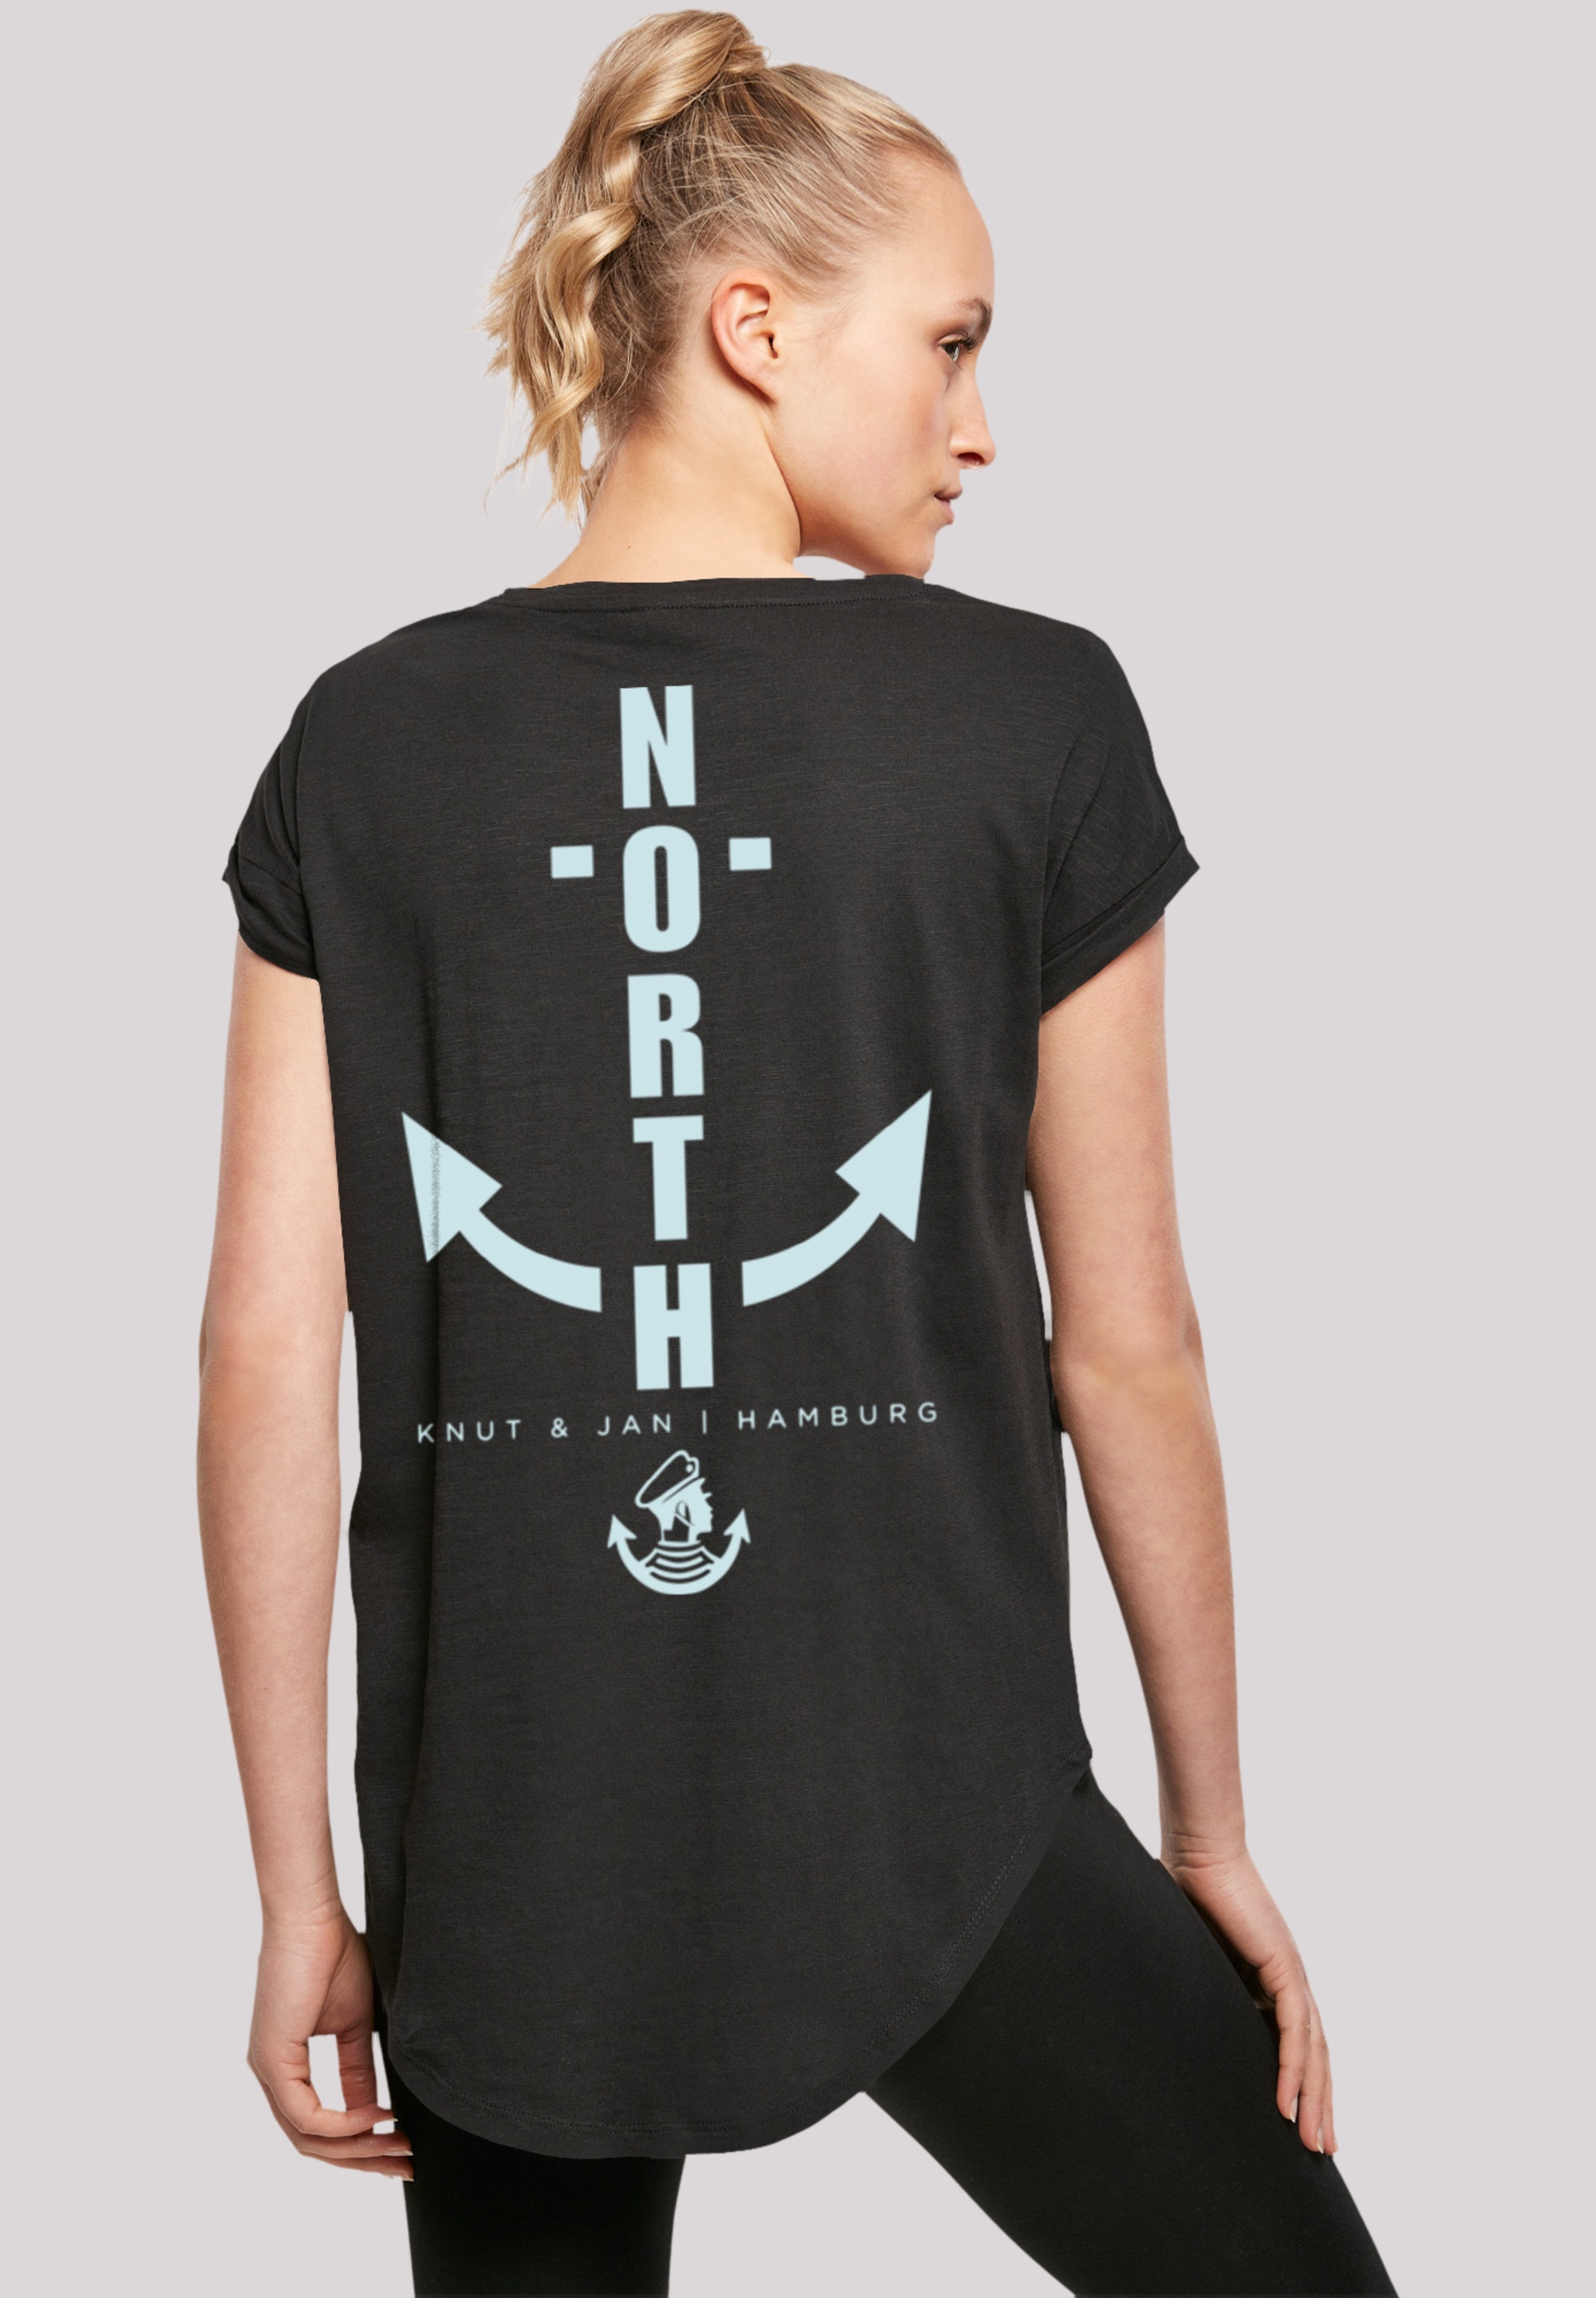 F4NT4STIC T-Shirt »North Anker Knut Jan kaufen Print & Hamburg«